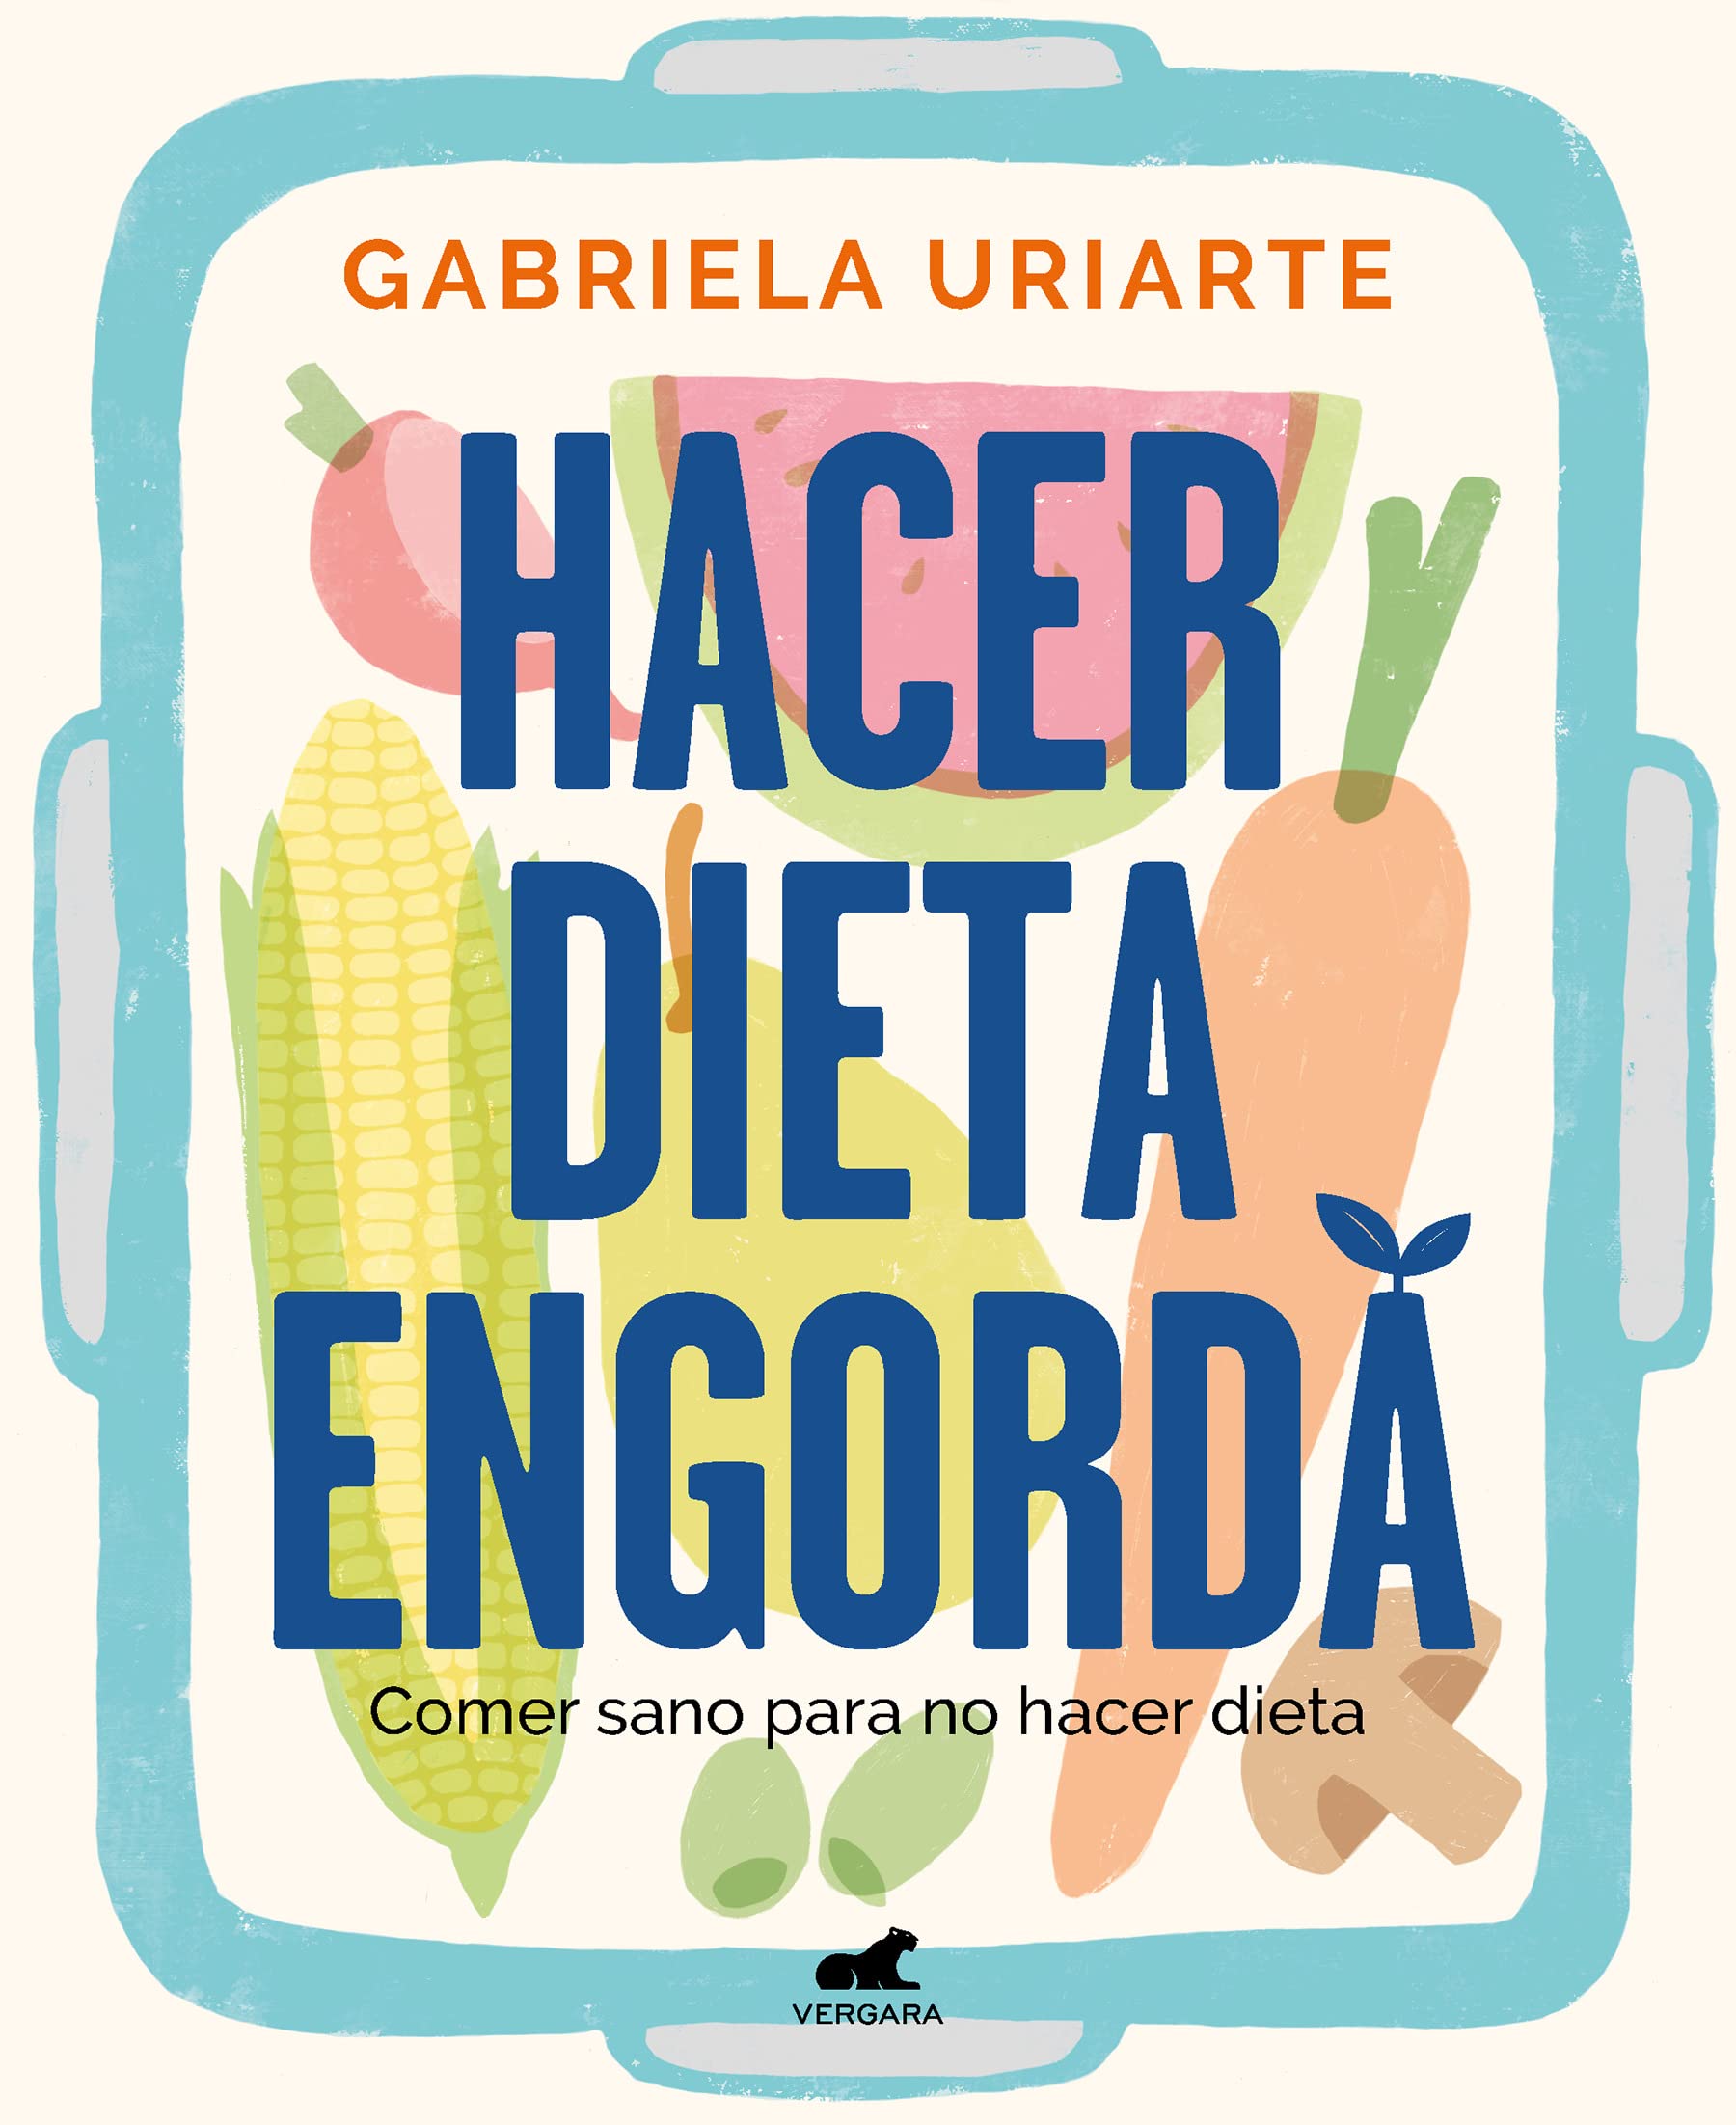 Hacer dieta engorda, qué cuenta el libro de Gabriela Uriarte